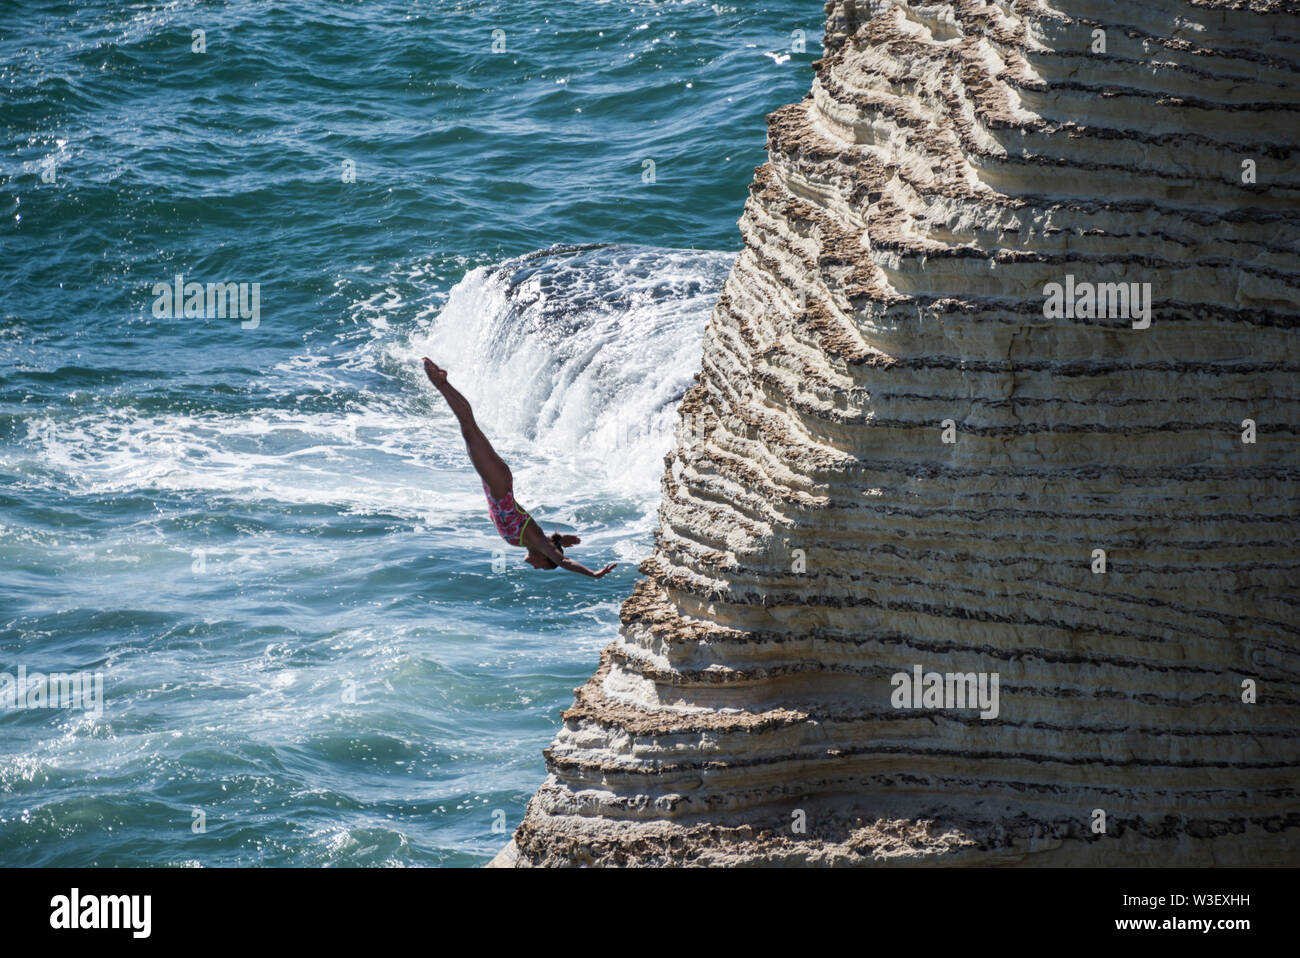 Concurrents sauter de rochers Rauche, Beyrouth, le lancement d'une hauteur de jusqu'à 27m, pour le Red Bull Cliff Diving world series 2019 Banque D'Images